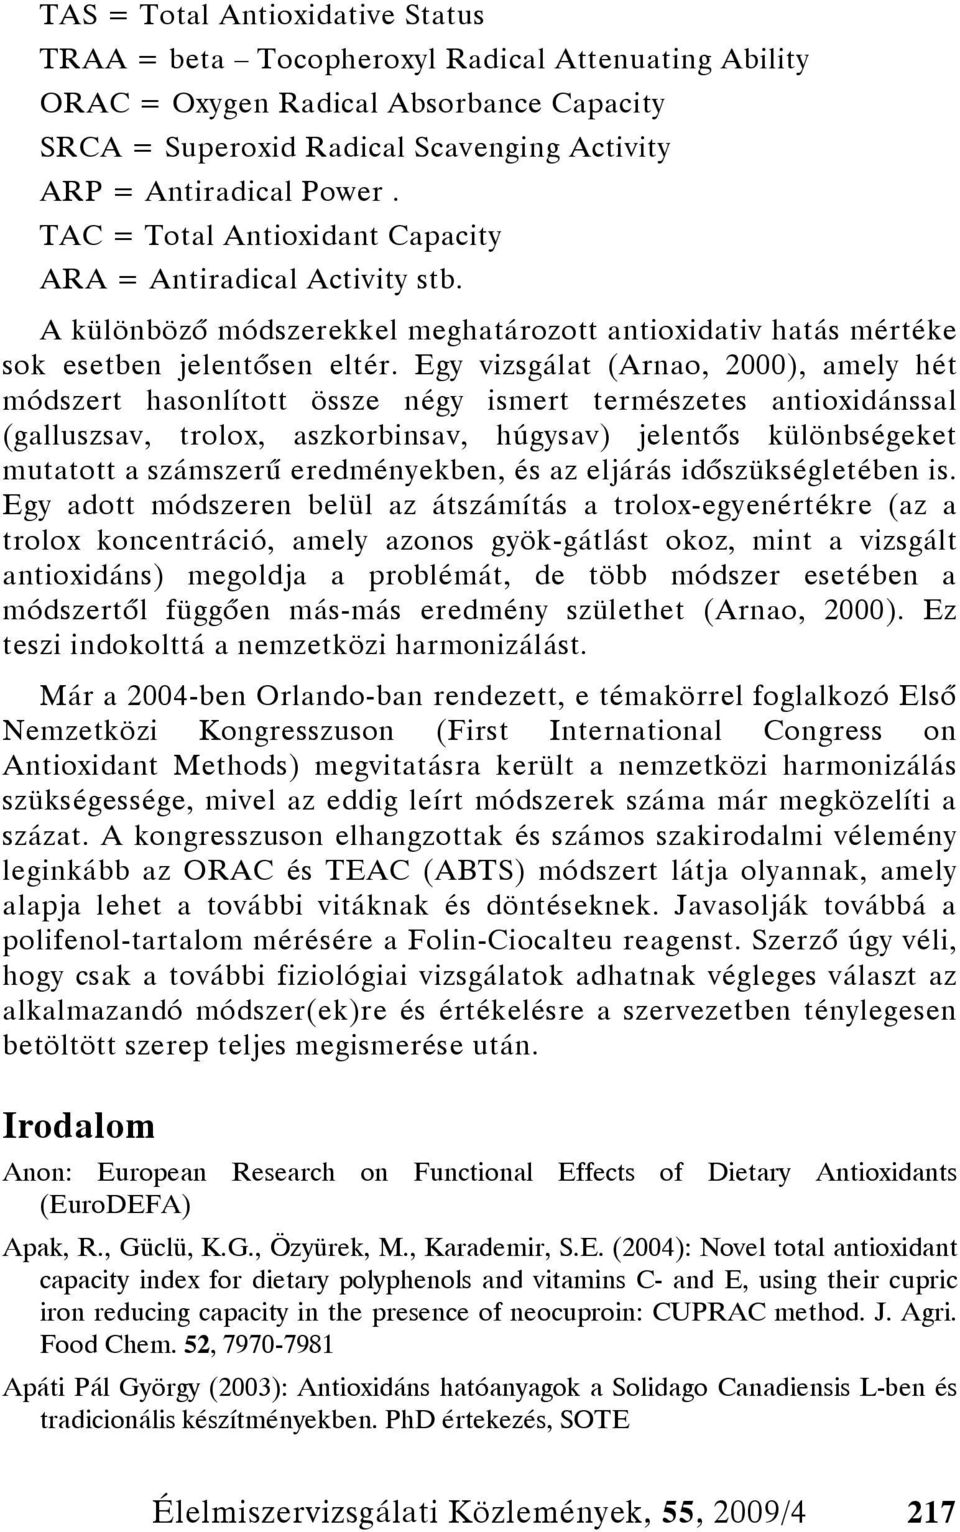 Egy vizsgálat (Arnao, 2000), amely hét módszert hasonlított össze négy ismert természetes antioxidánssal (galluszsav, trolox, aszkorbinsav, húgysav) jelentős különbségeket mutatott a számszerű